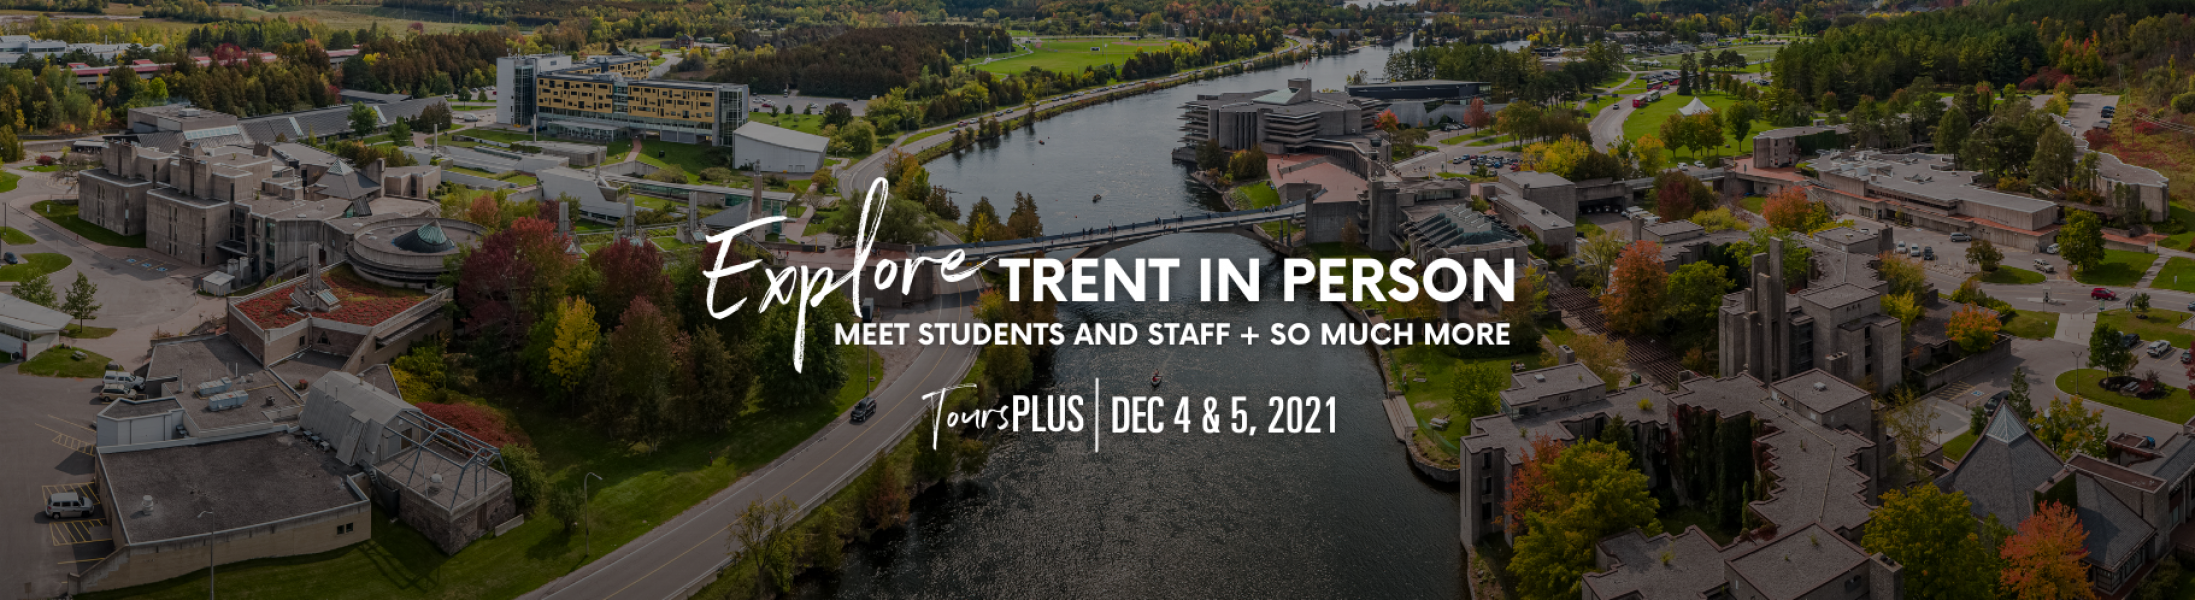 Explore Trent In Person TourPlus Dec 4 and 5, 2021